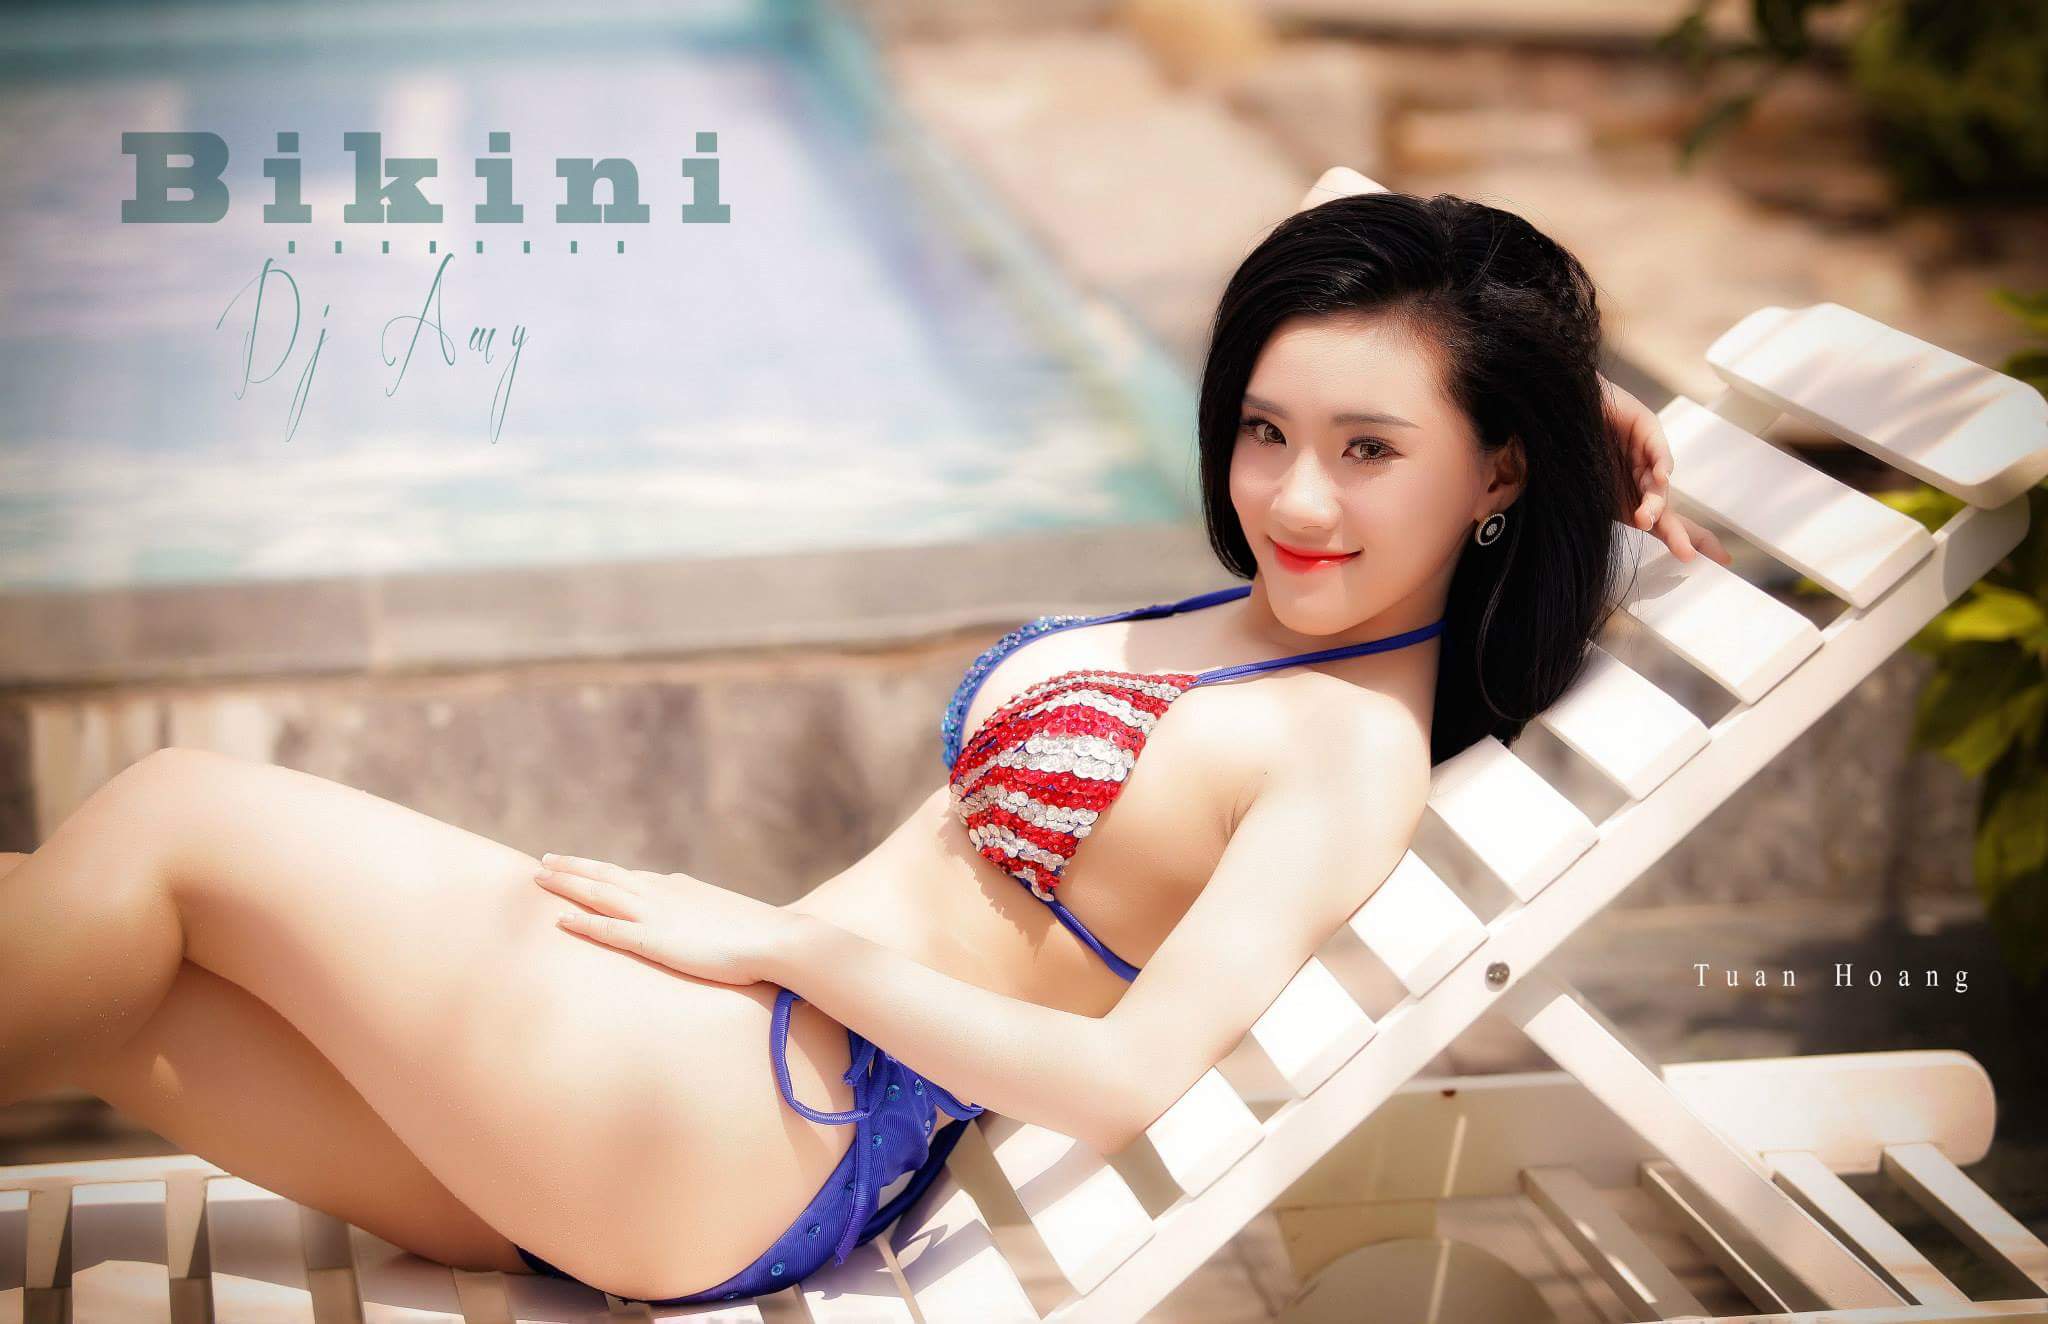 DJ My Bé Bỏng bikini sexy summer photo Tuấn Hoàng